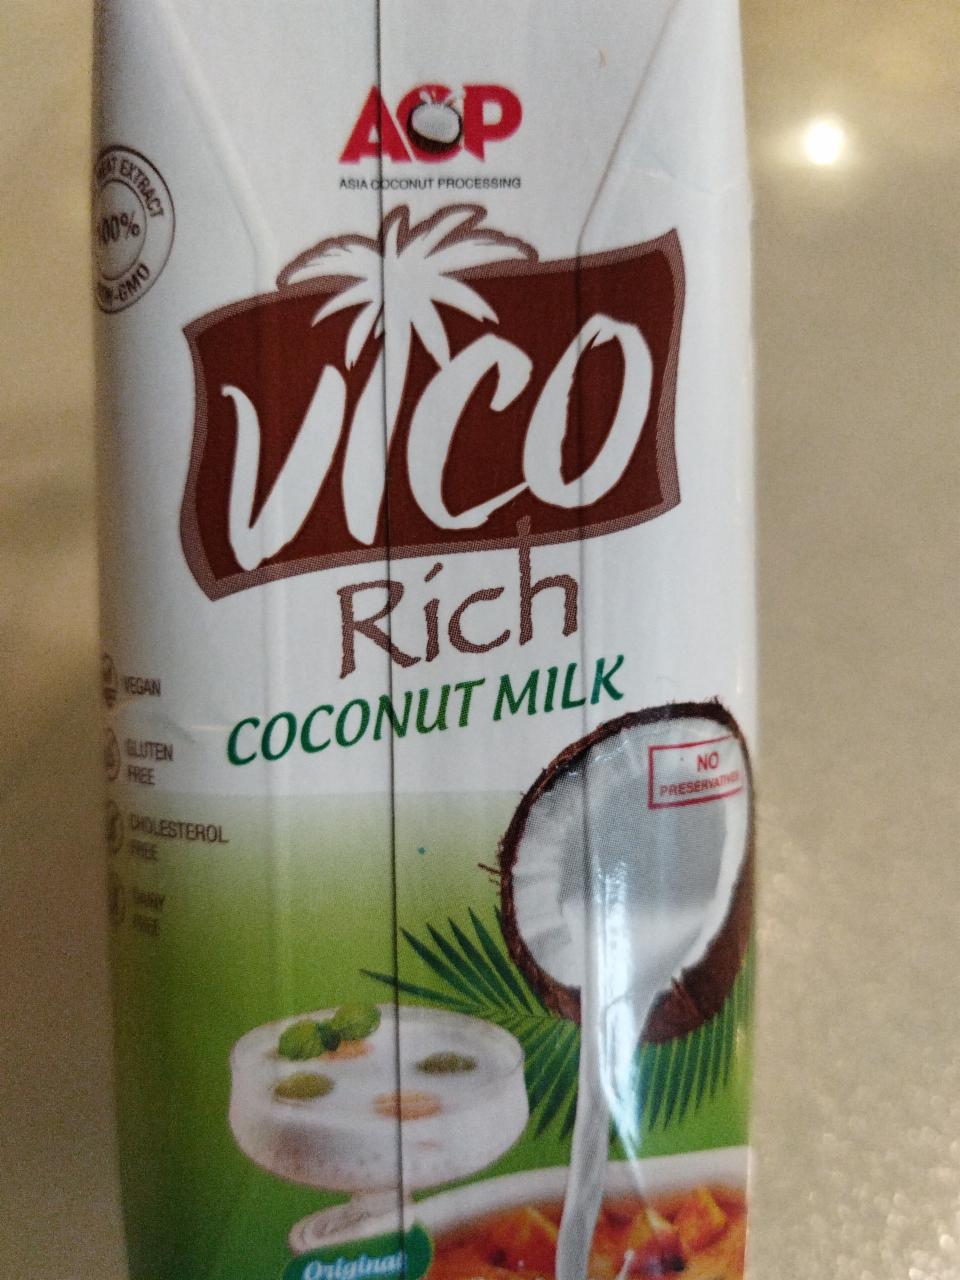 Фото - органическое кокосовое молоко Vico Rich